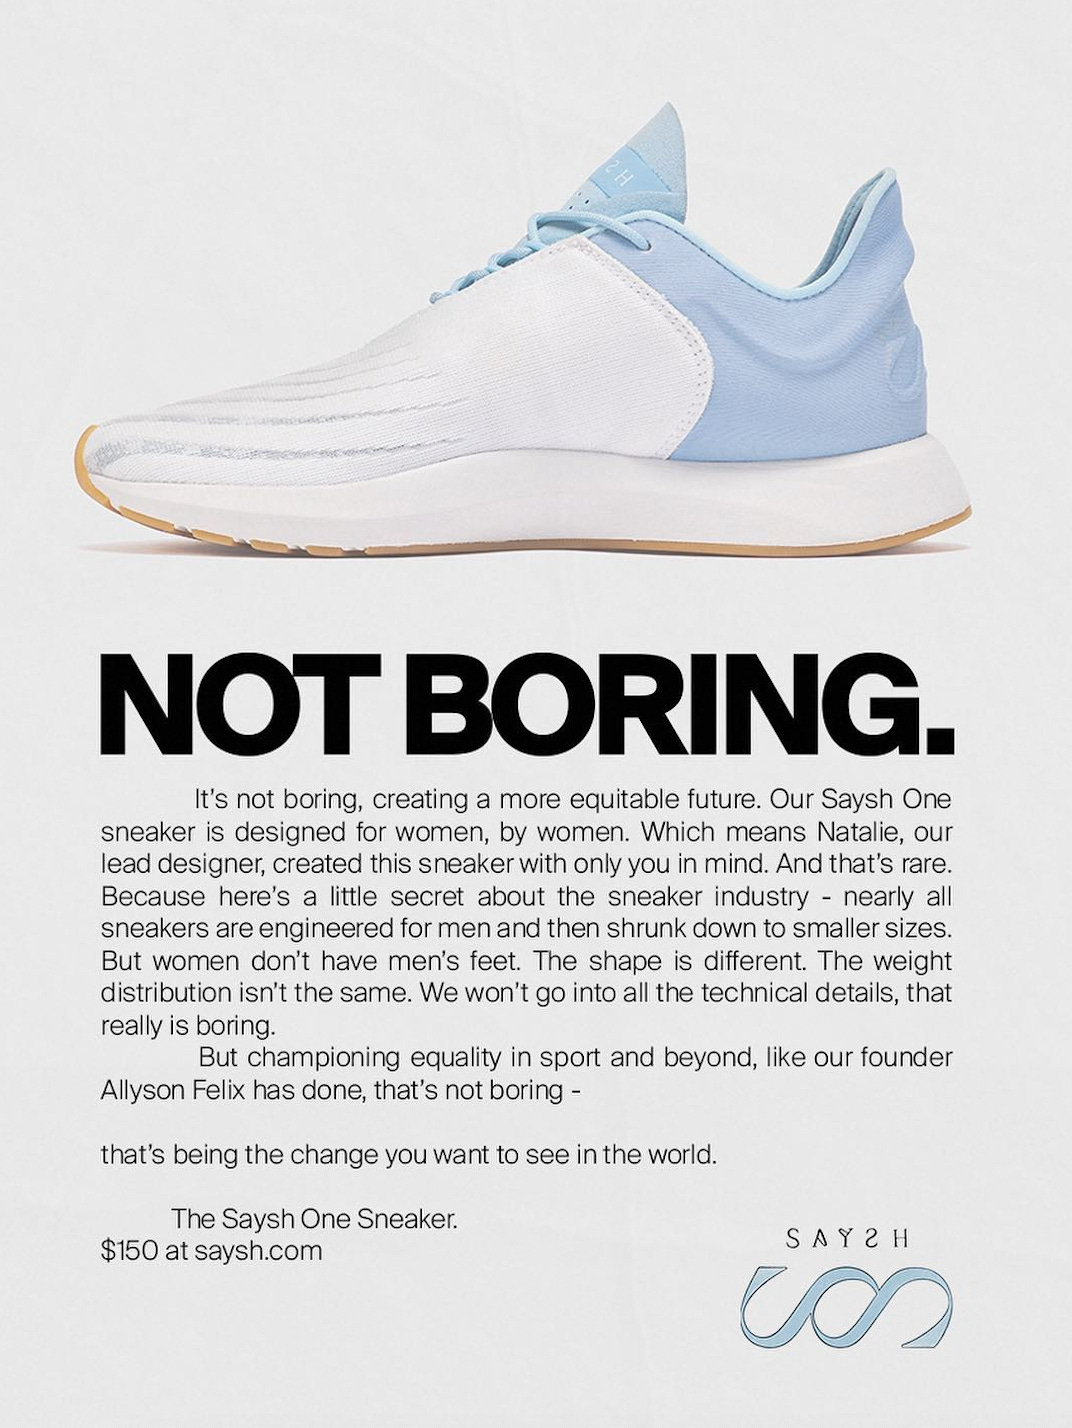 Campagna stampa del brand di scarpe Saysh